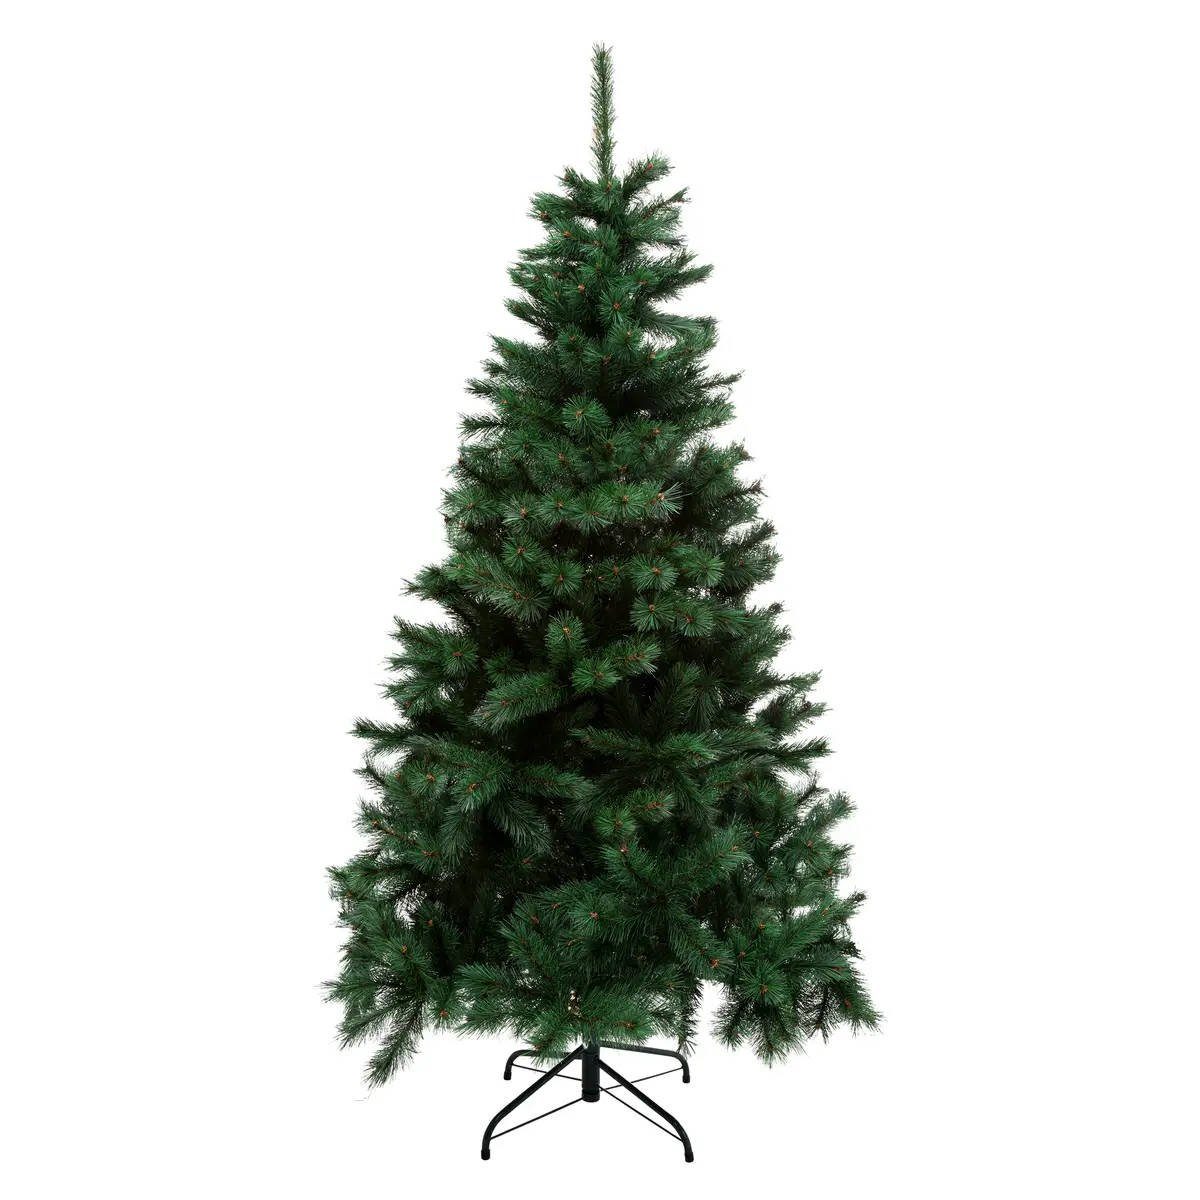 & Lights Künstlicher Weihnachtsbaum, Fééric künstlich Christmas